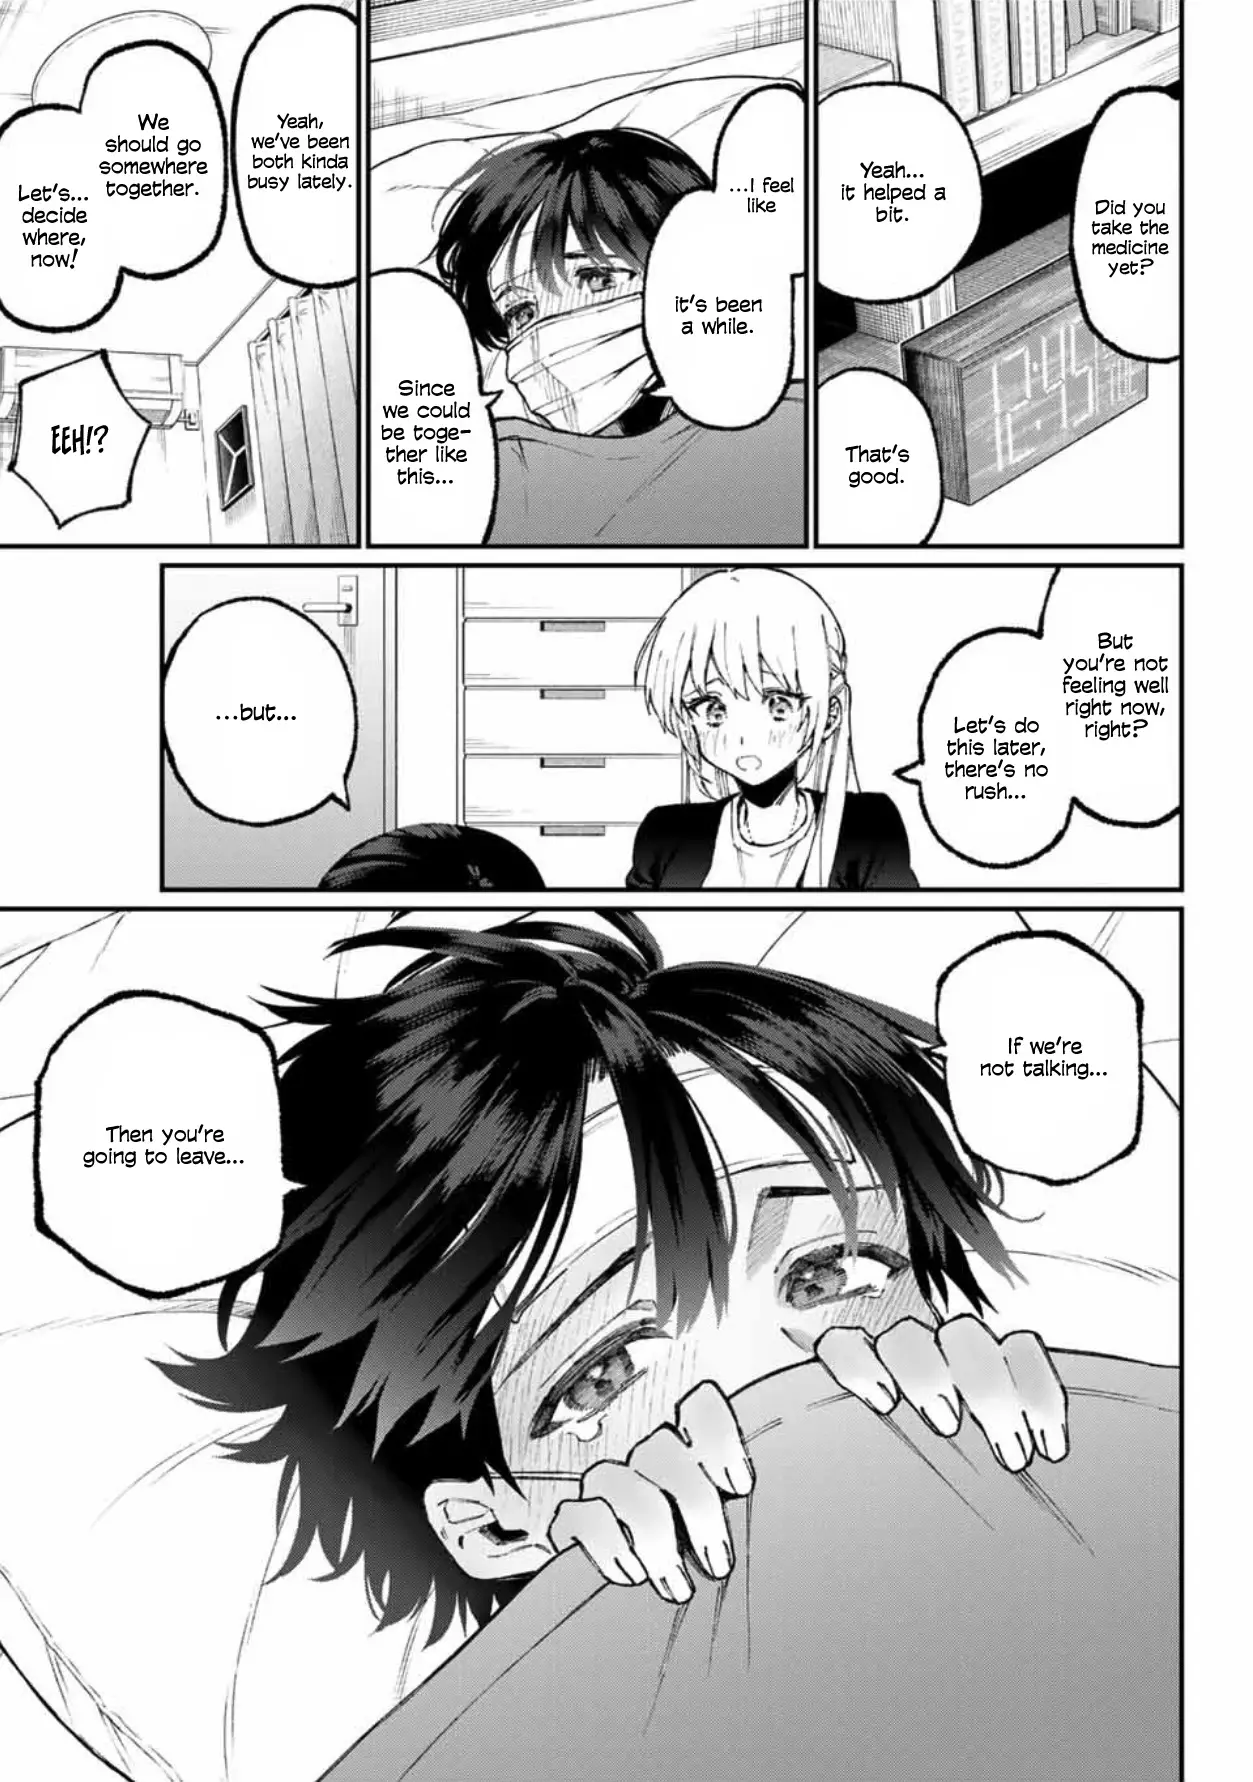 Shikimori's Not Just A Cutie - 57 page 8